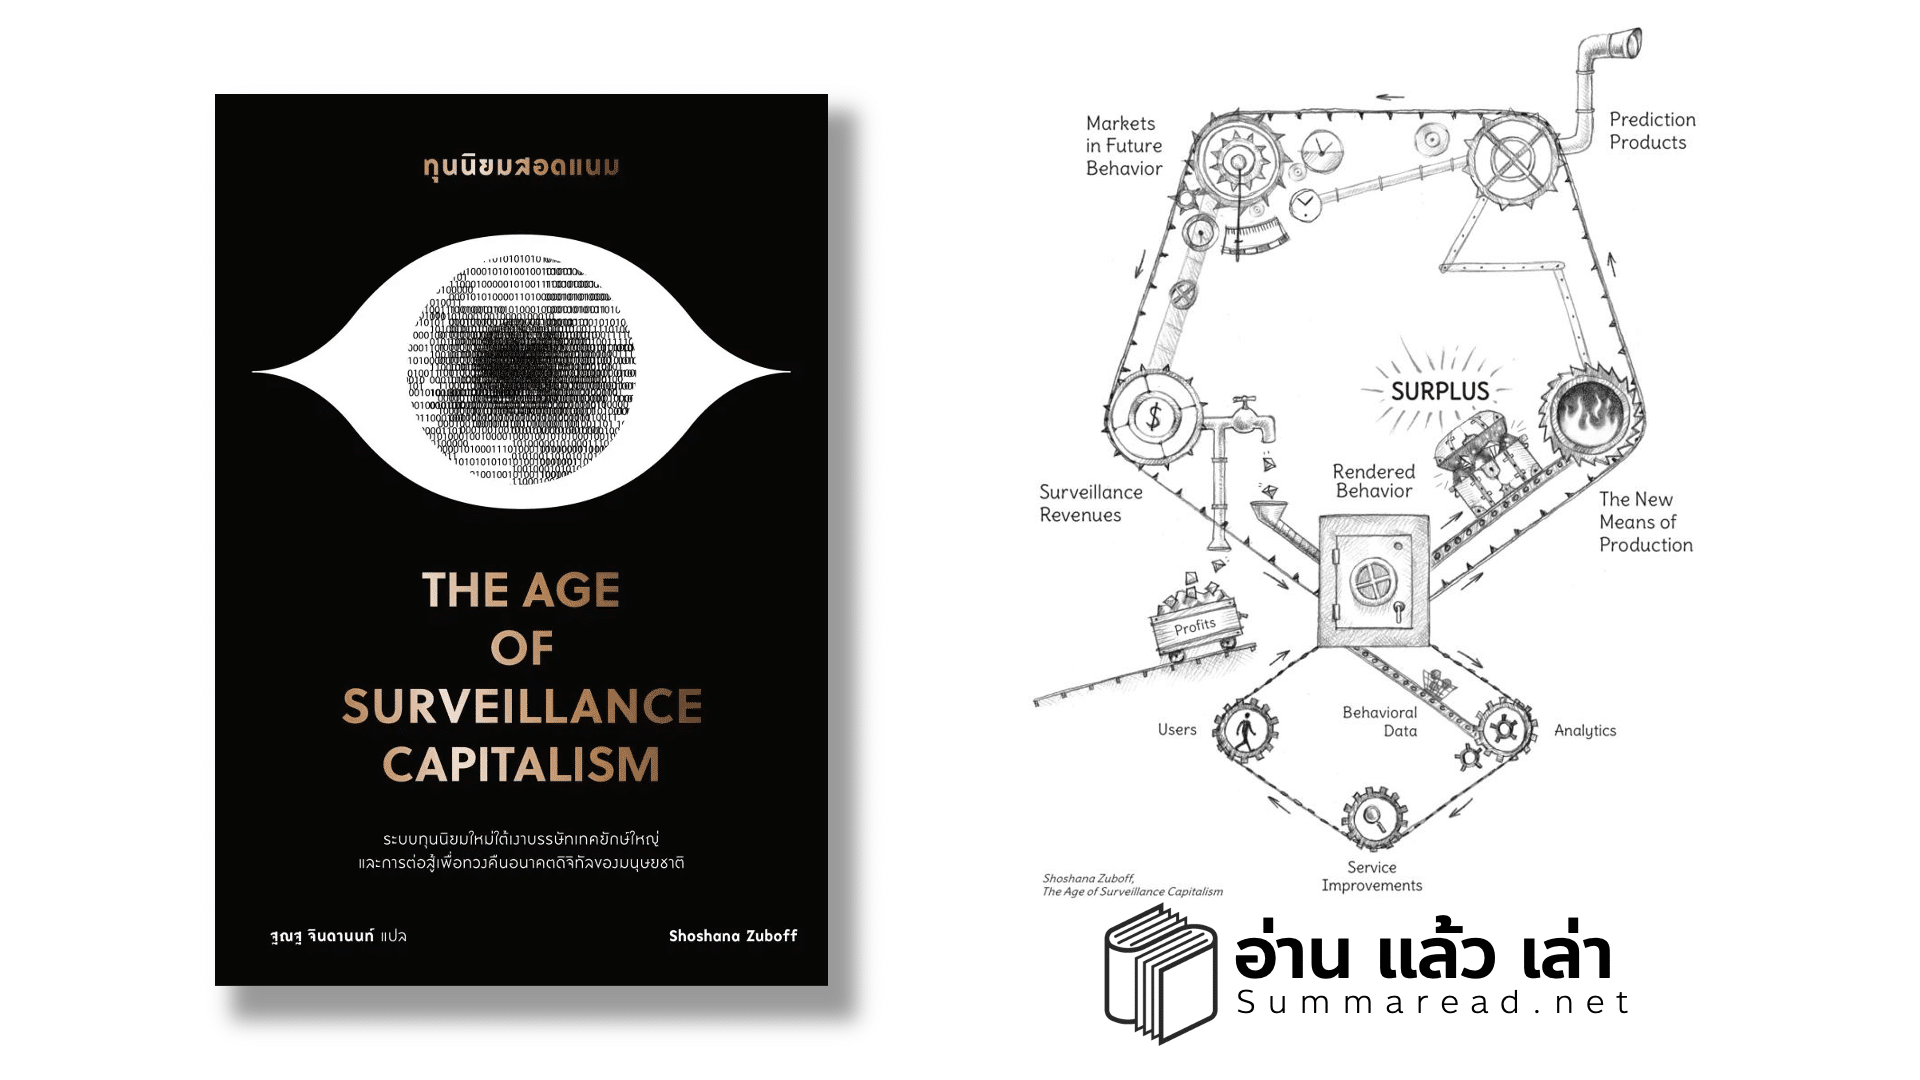 สรุปหนังสือ The Age of Surveillance Capitalism ทุนนิยมสอดแนม โลกที่เต็มไปด้วย Big Data และ Algorithm ควบคุมชีวิตเรา Shoshana Zuboff เขียน